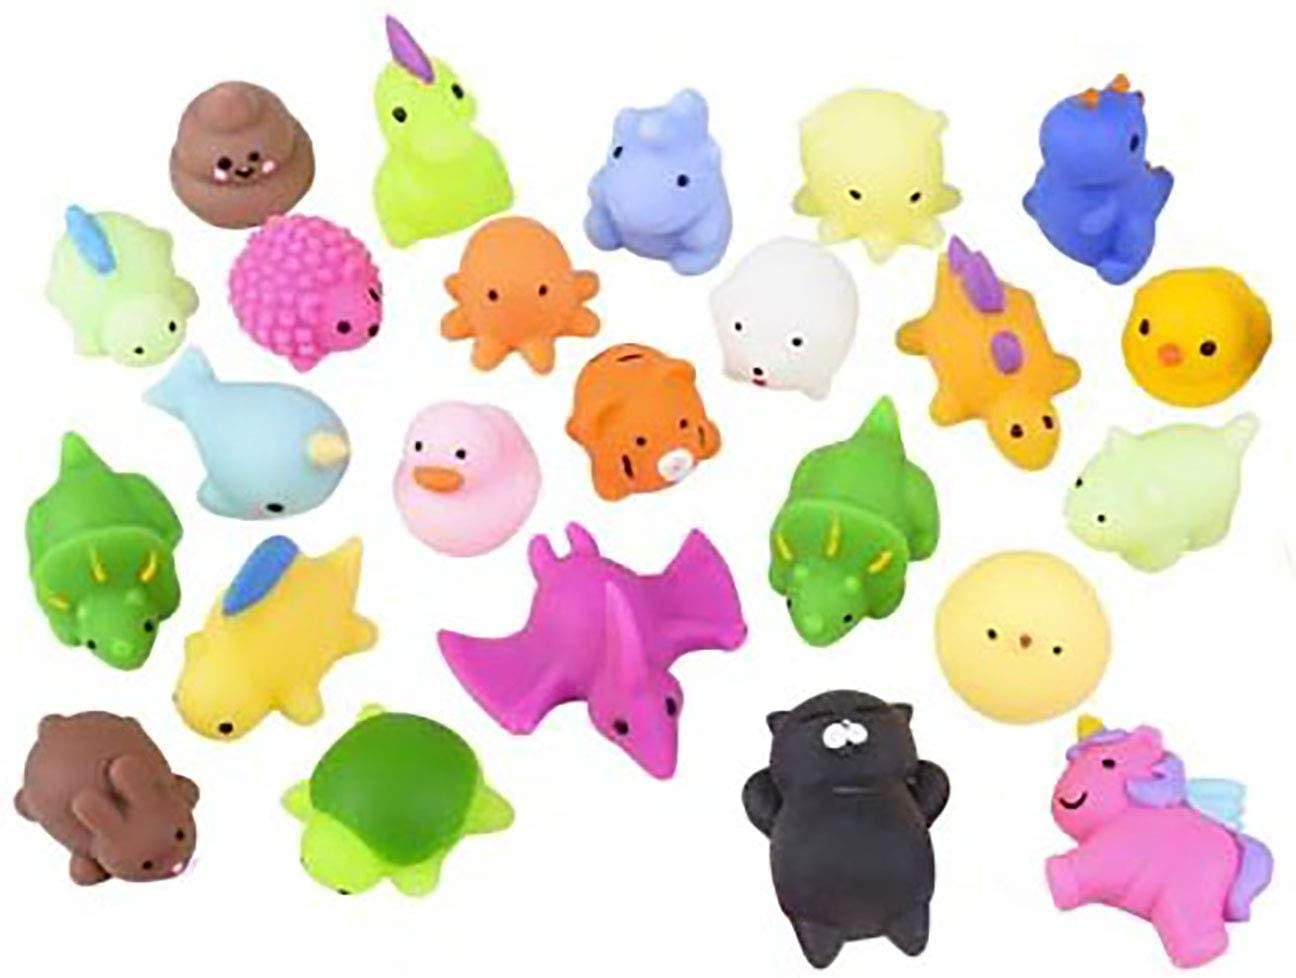 Soft Mochi Mochi Animals Jelly Toy Soft Squishy Jelly Pudding Toy 1 Set Random 